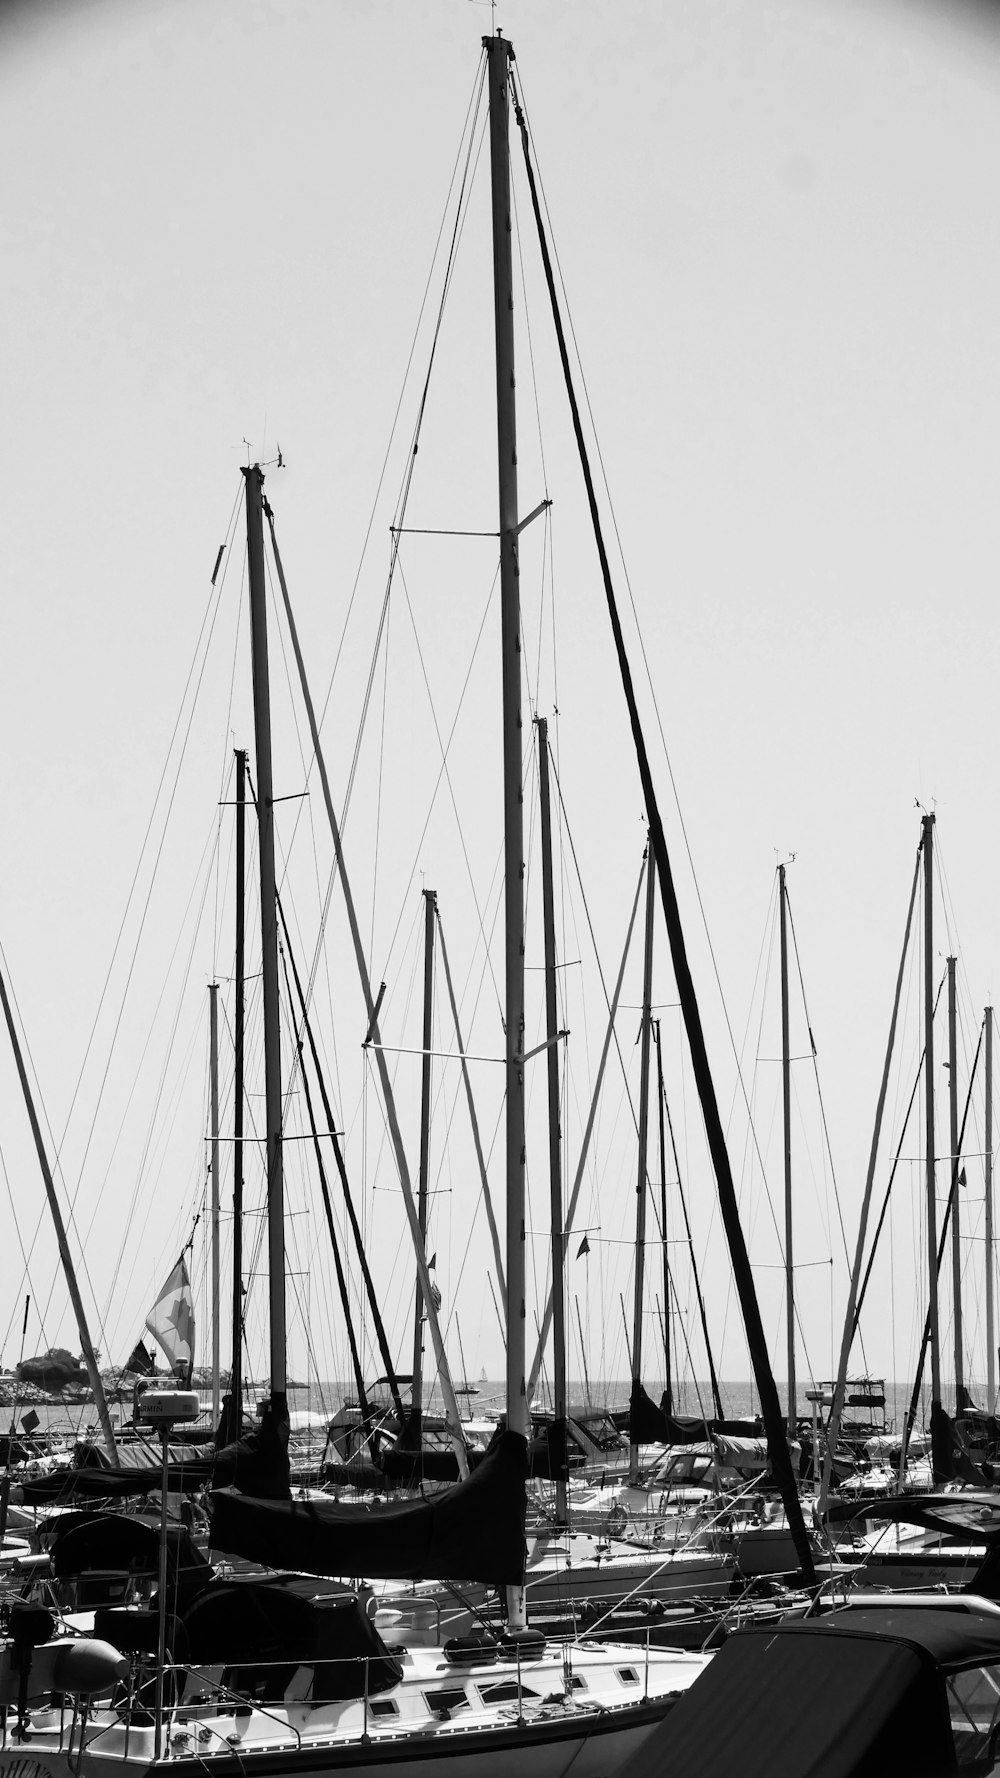 グレースケール写真の港のヨット